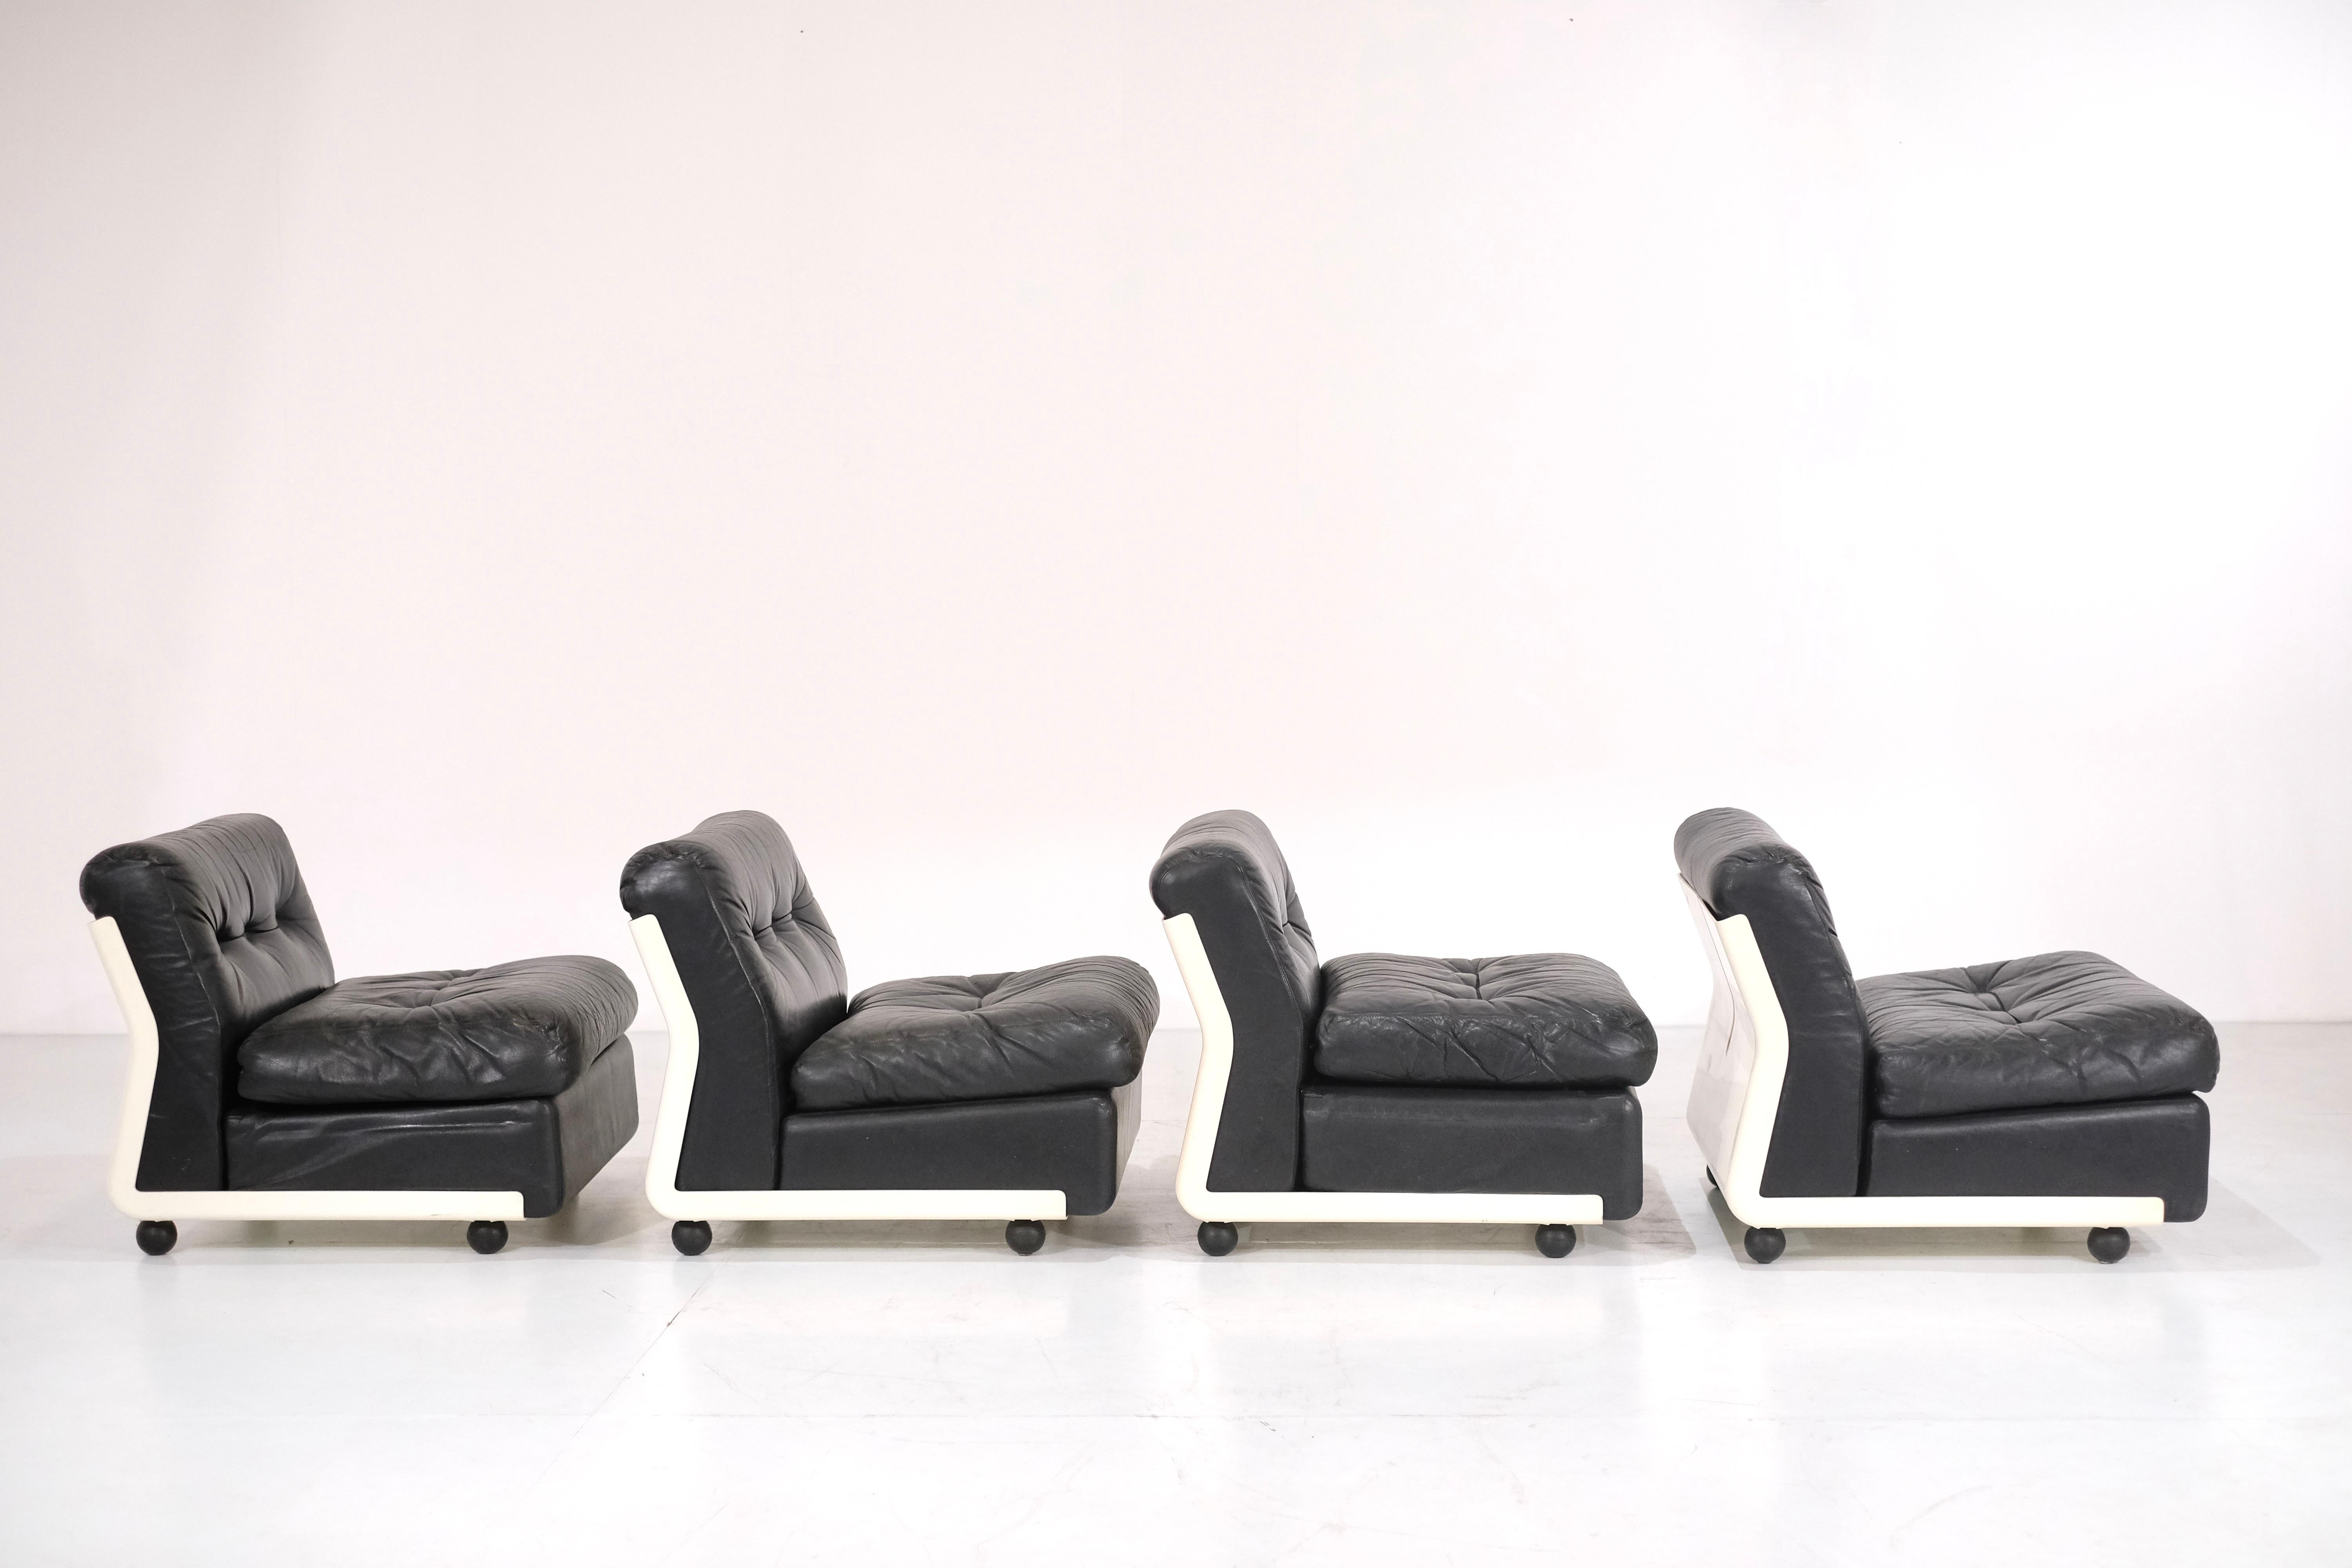 Superbe ensemble de 4 fauteuils Amanta en cuir noir  conçu par Mario Bellini pour C&B Italia en 1966.

Le cuir est en très bon état et présente une patine étonnante. Ils sont en très bon état avec quelques signes d'utilisation dus à la durée de vie